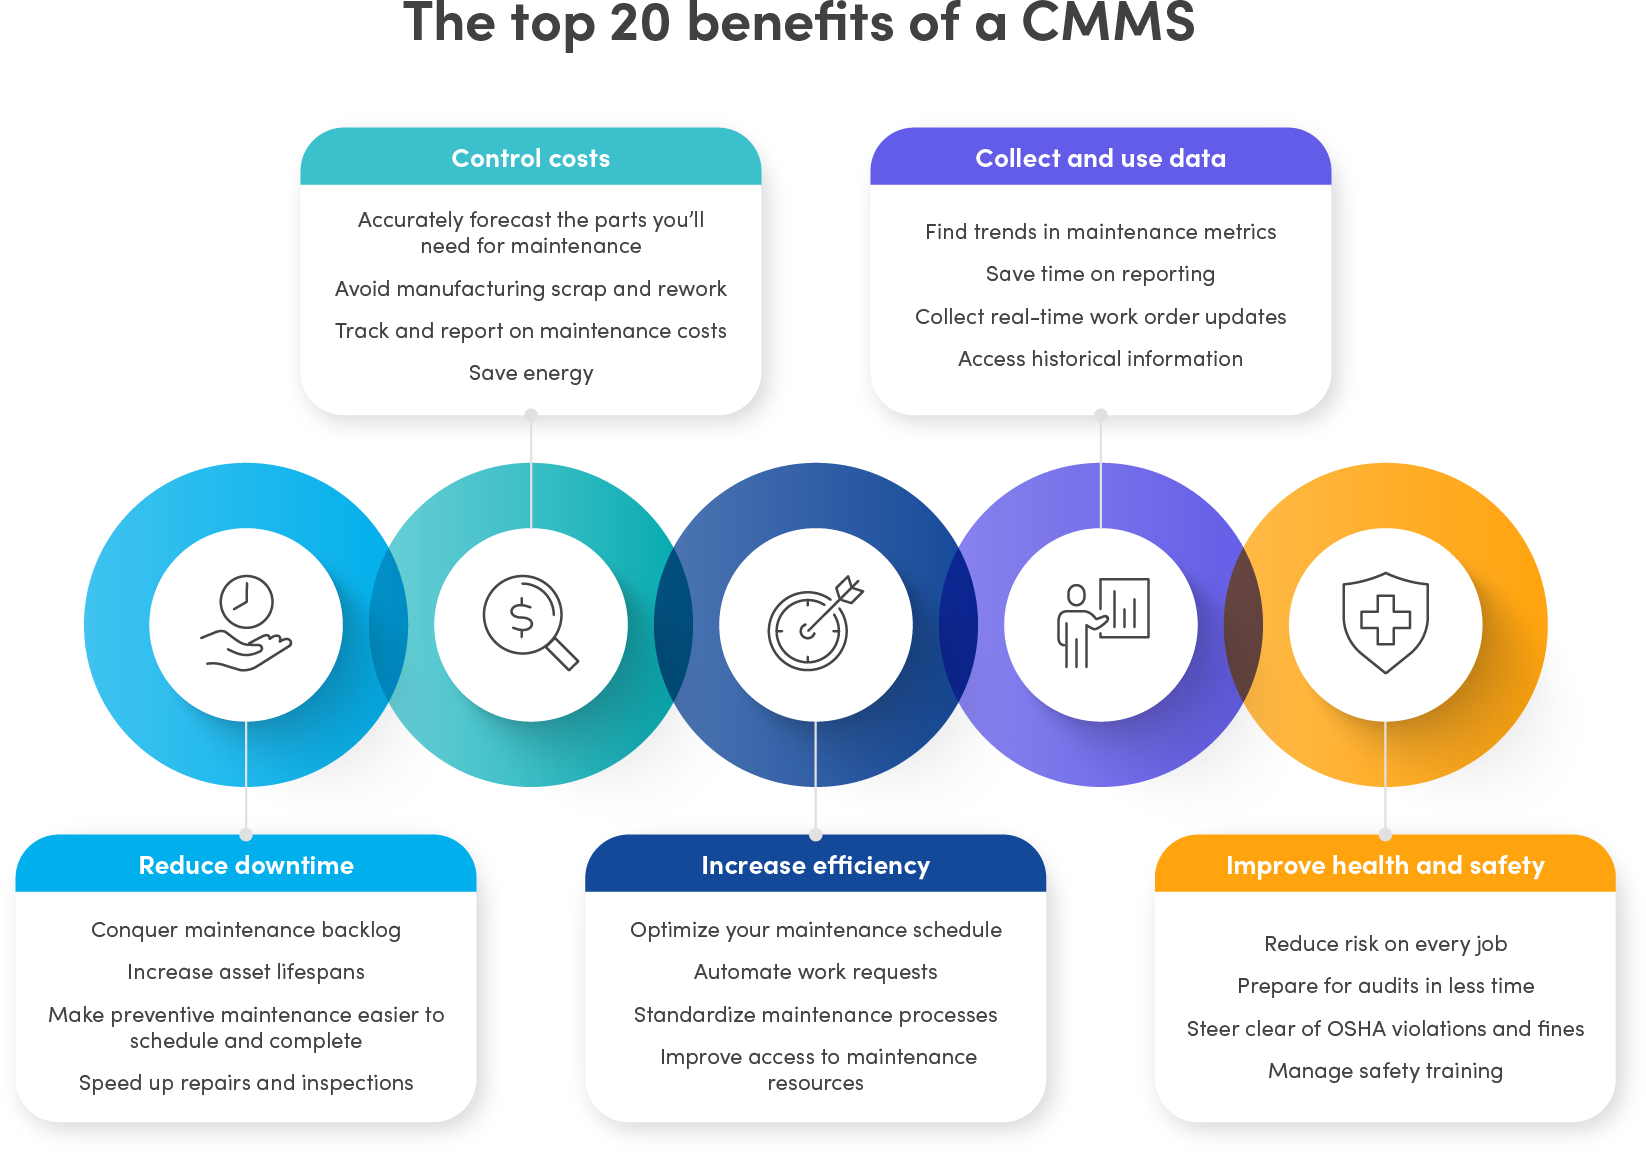 Top 20 CMMS benefits